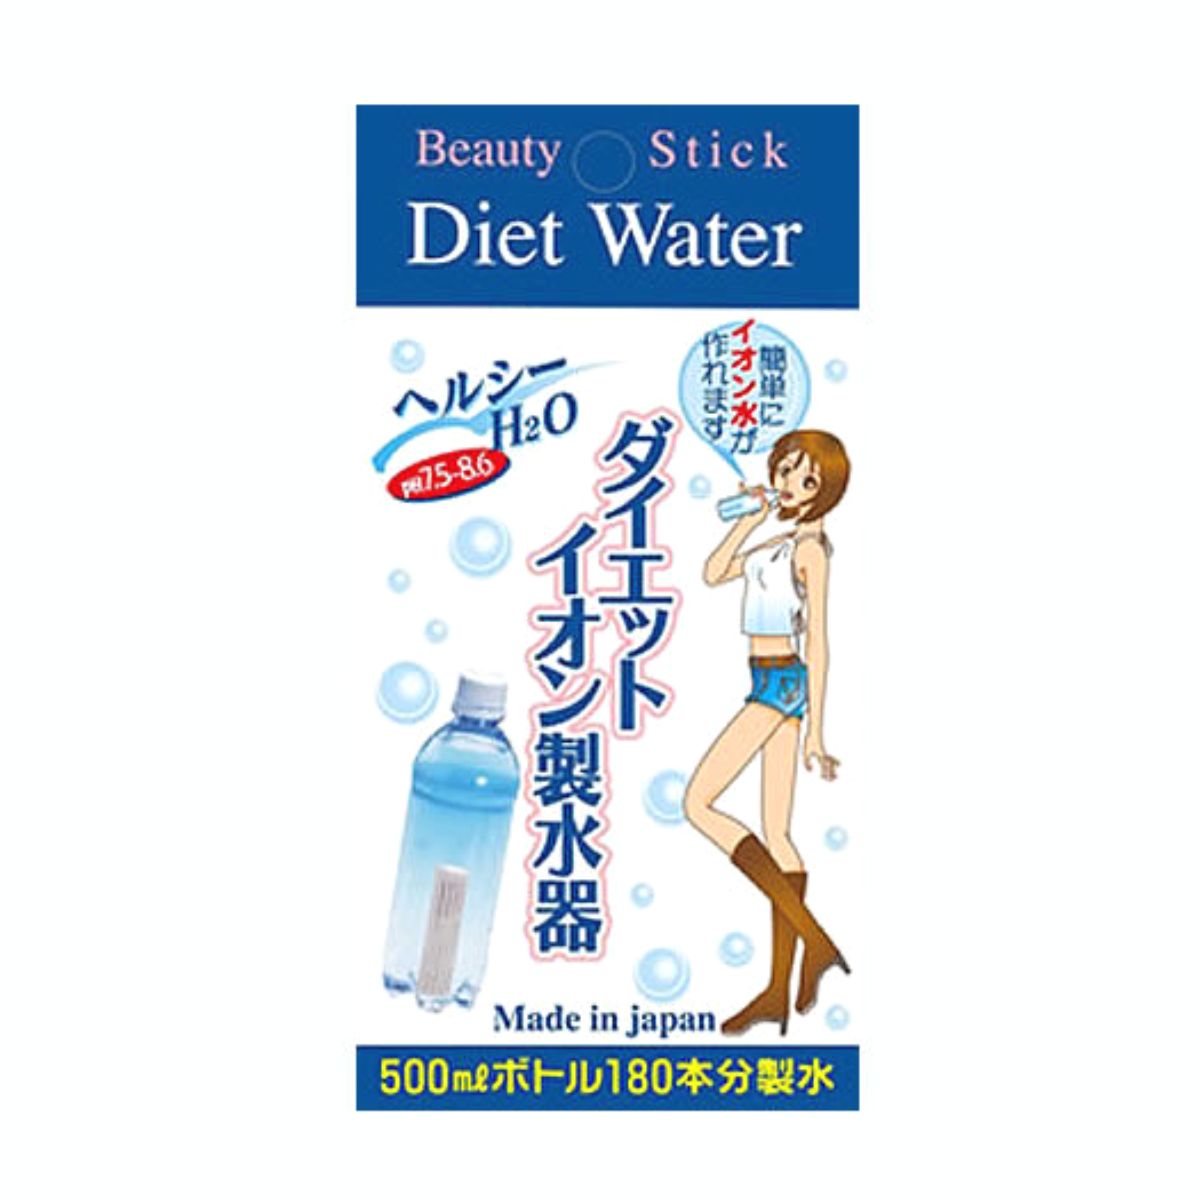 日本カルシウム工業 ダイエットイオン製水器 24g【6個セット】アルカリイオン水 簡単 便利 経済的 ペットボトル